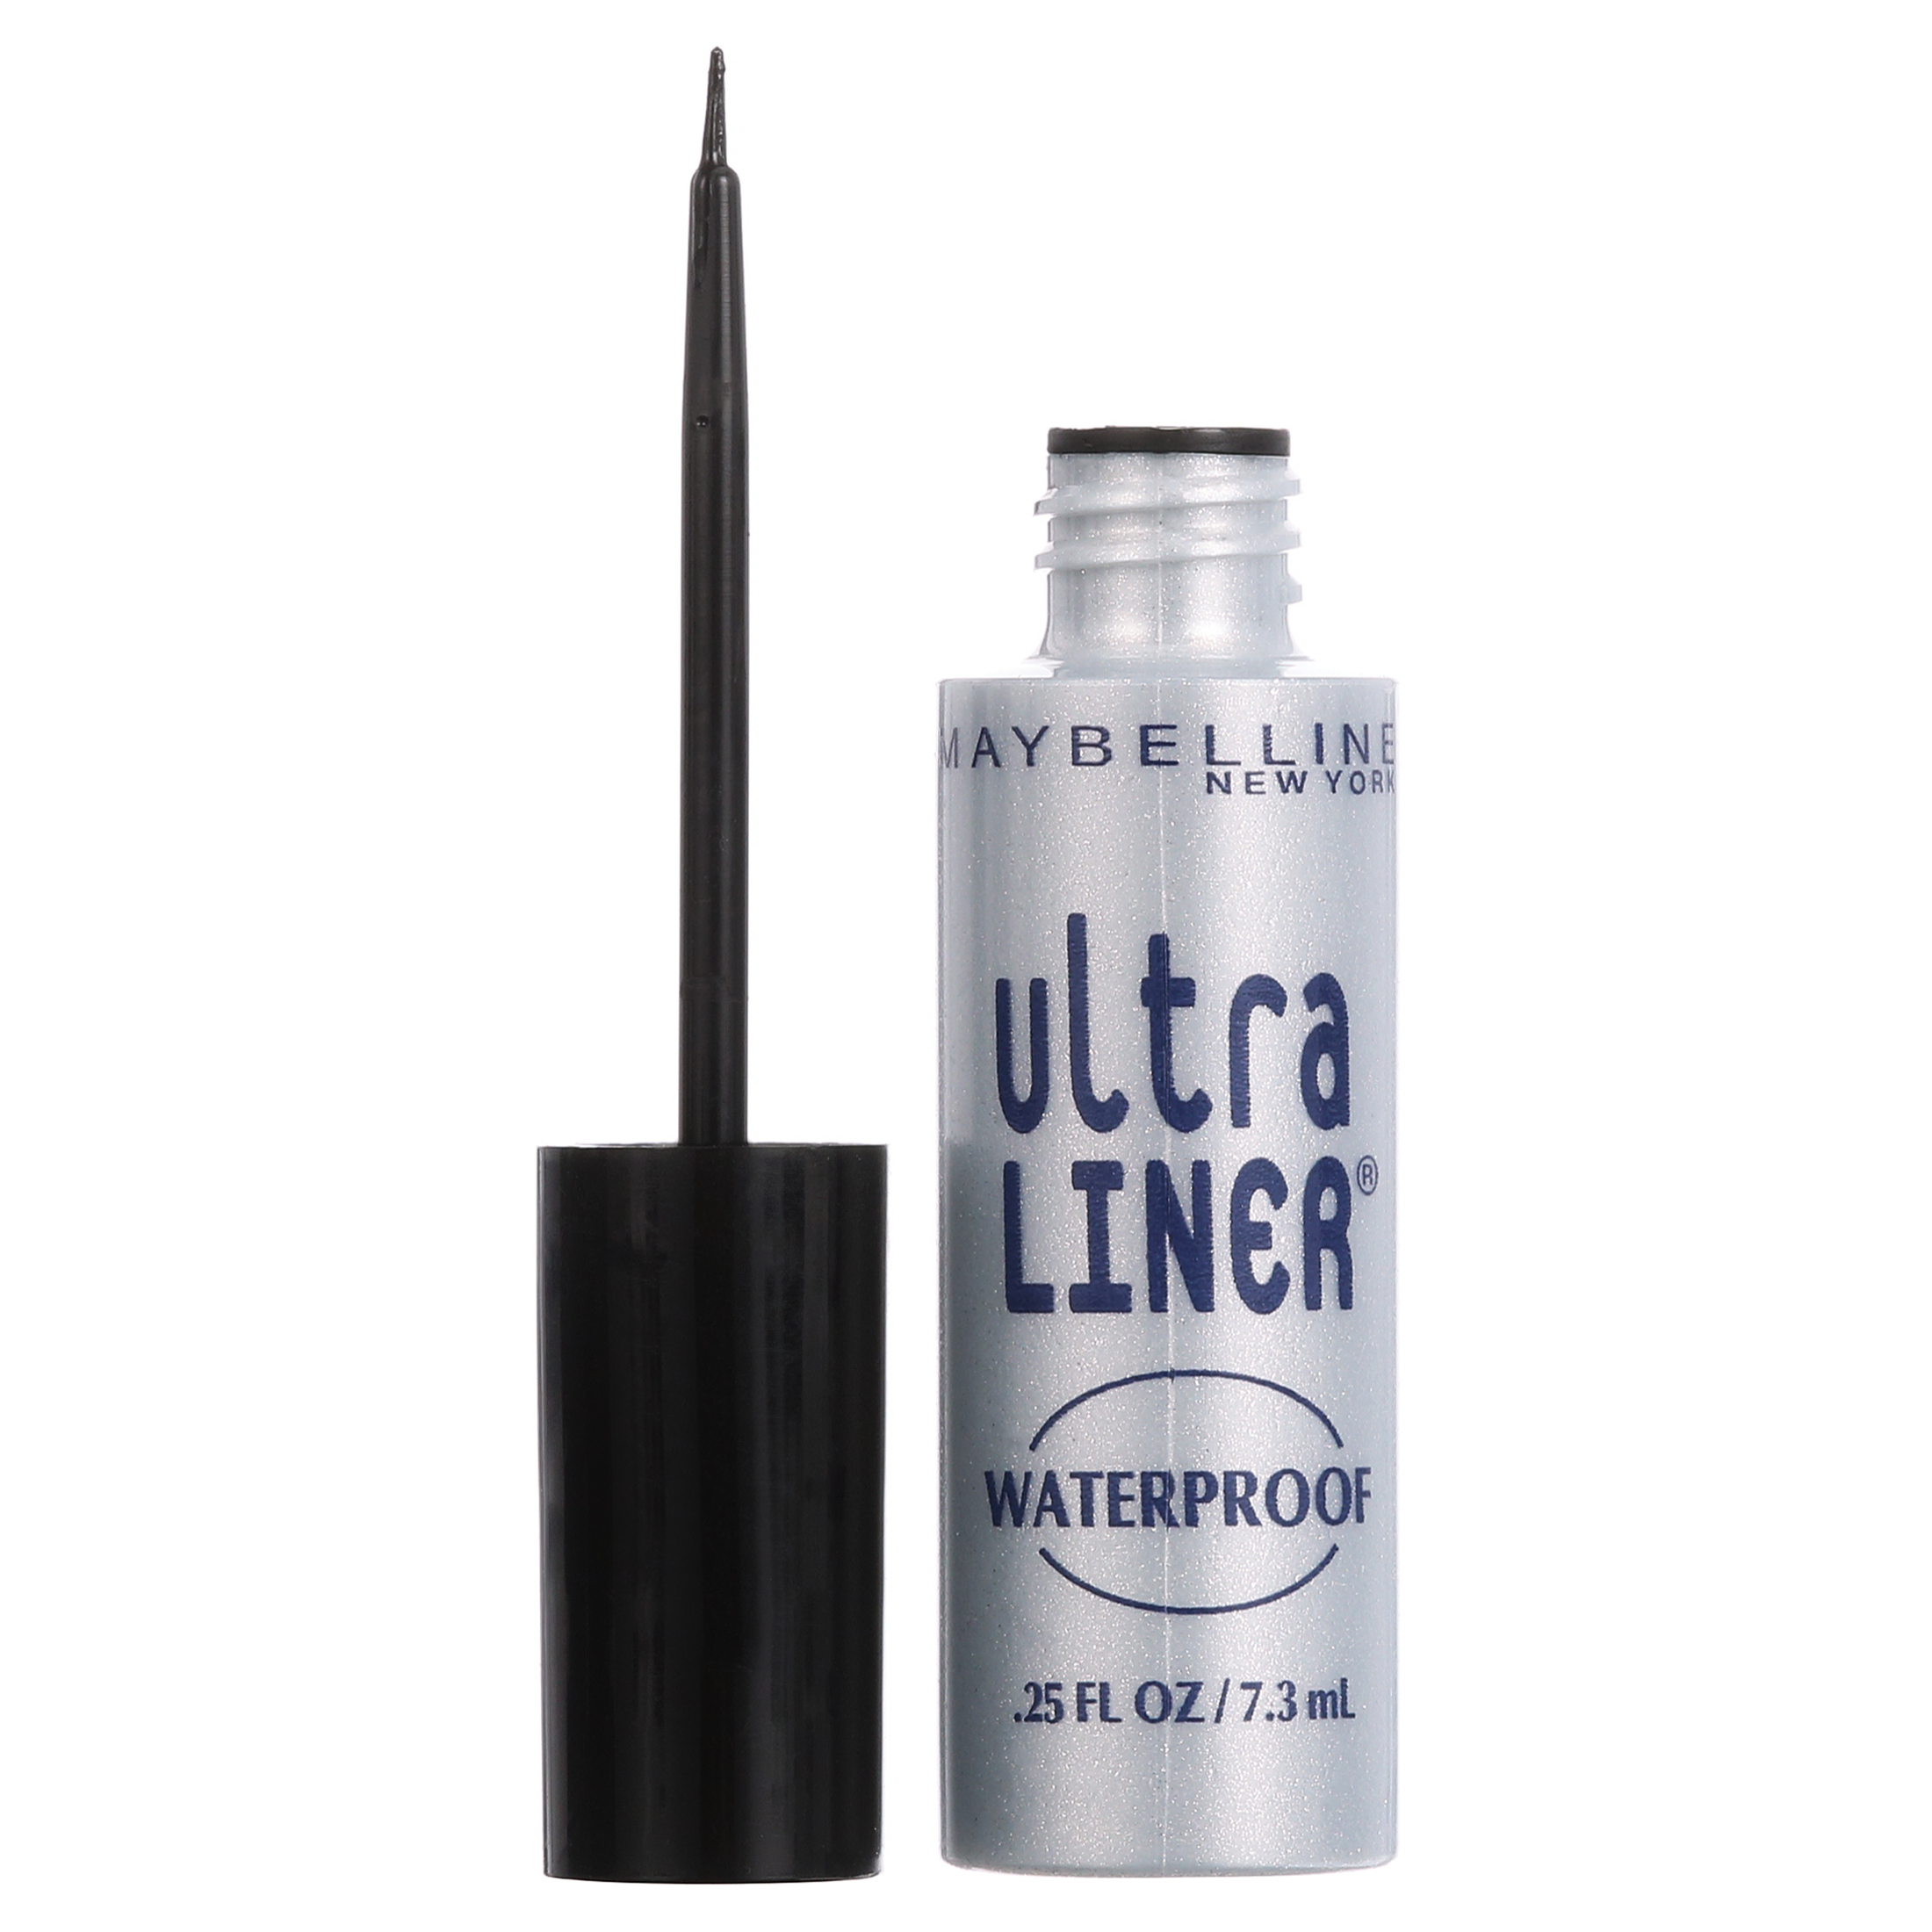 Maybelline Ultra Liner Waterproof Liquid Eyeliner, Black - image 15 of 16